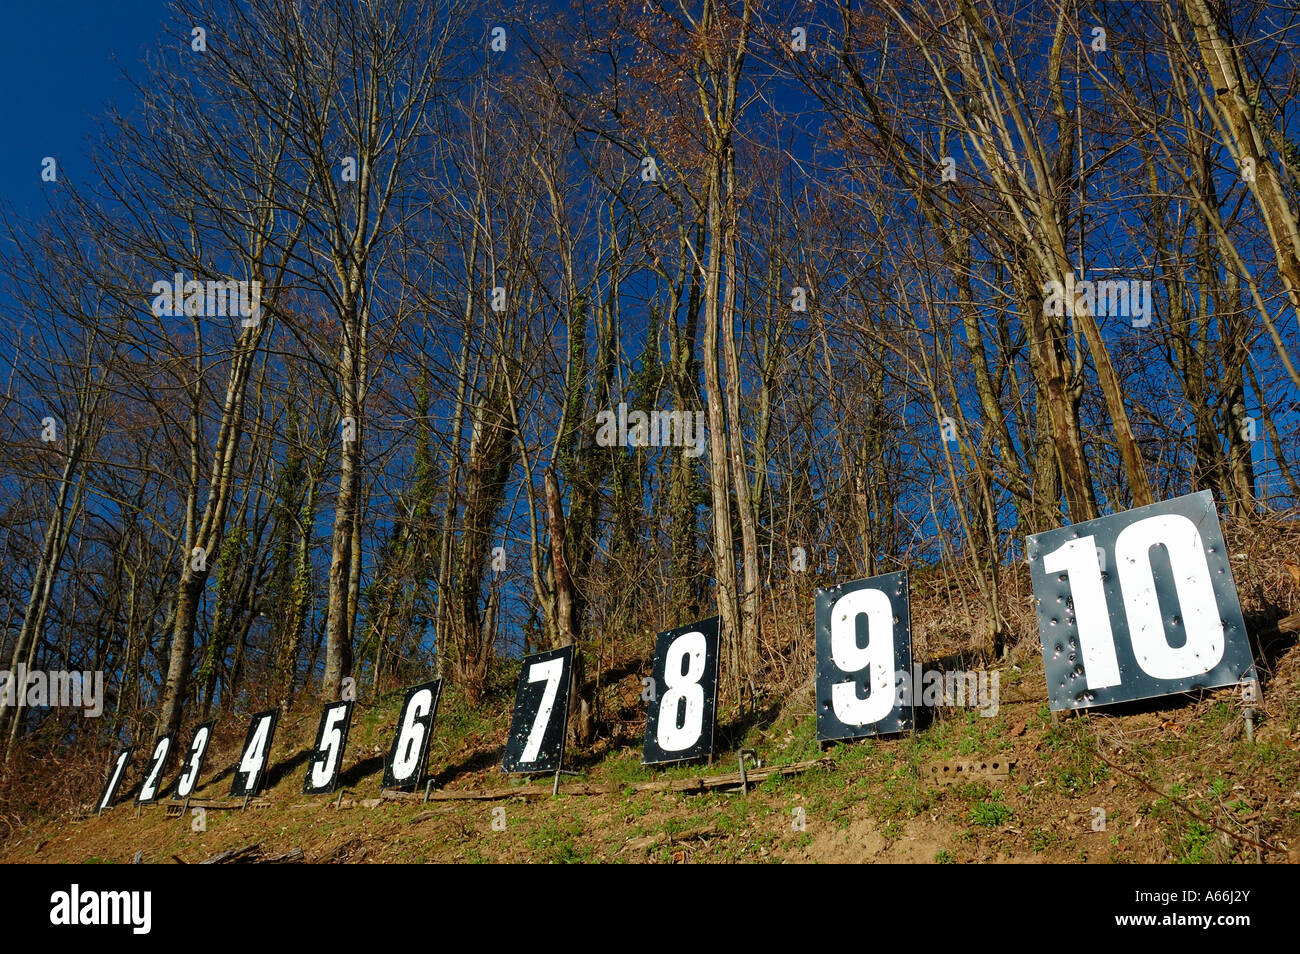 Une ligne de nombres dans un bois marquant la position cible d'un tir de Suisse (stand de tir) Banque D'Images